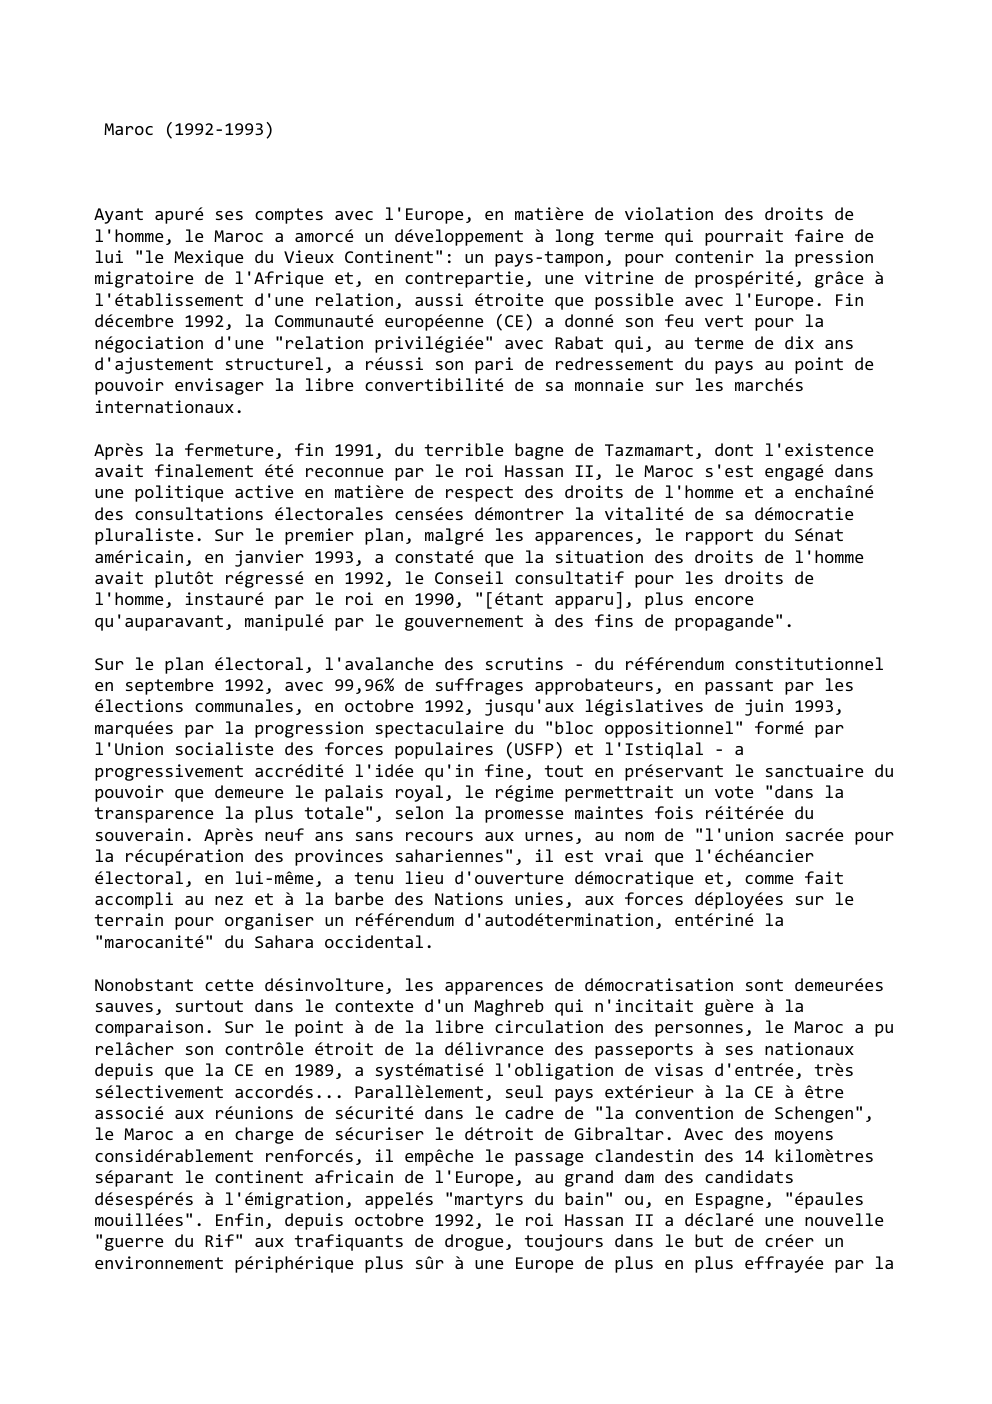 Prévisualisation du document Maroc (1992-1993)

Ayant apuré ses comptes avec l'Europe, en matière de violation des droits de
l'homme, le Maroc a amorcé...